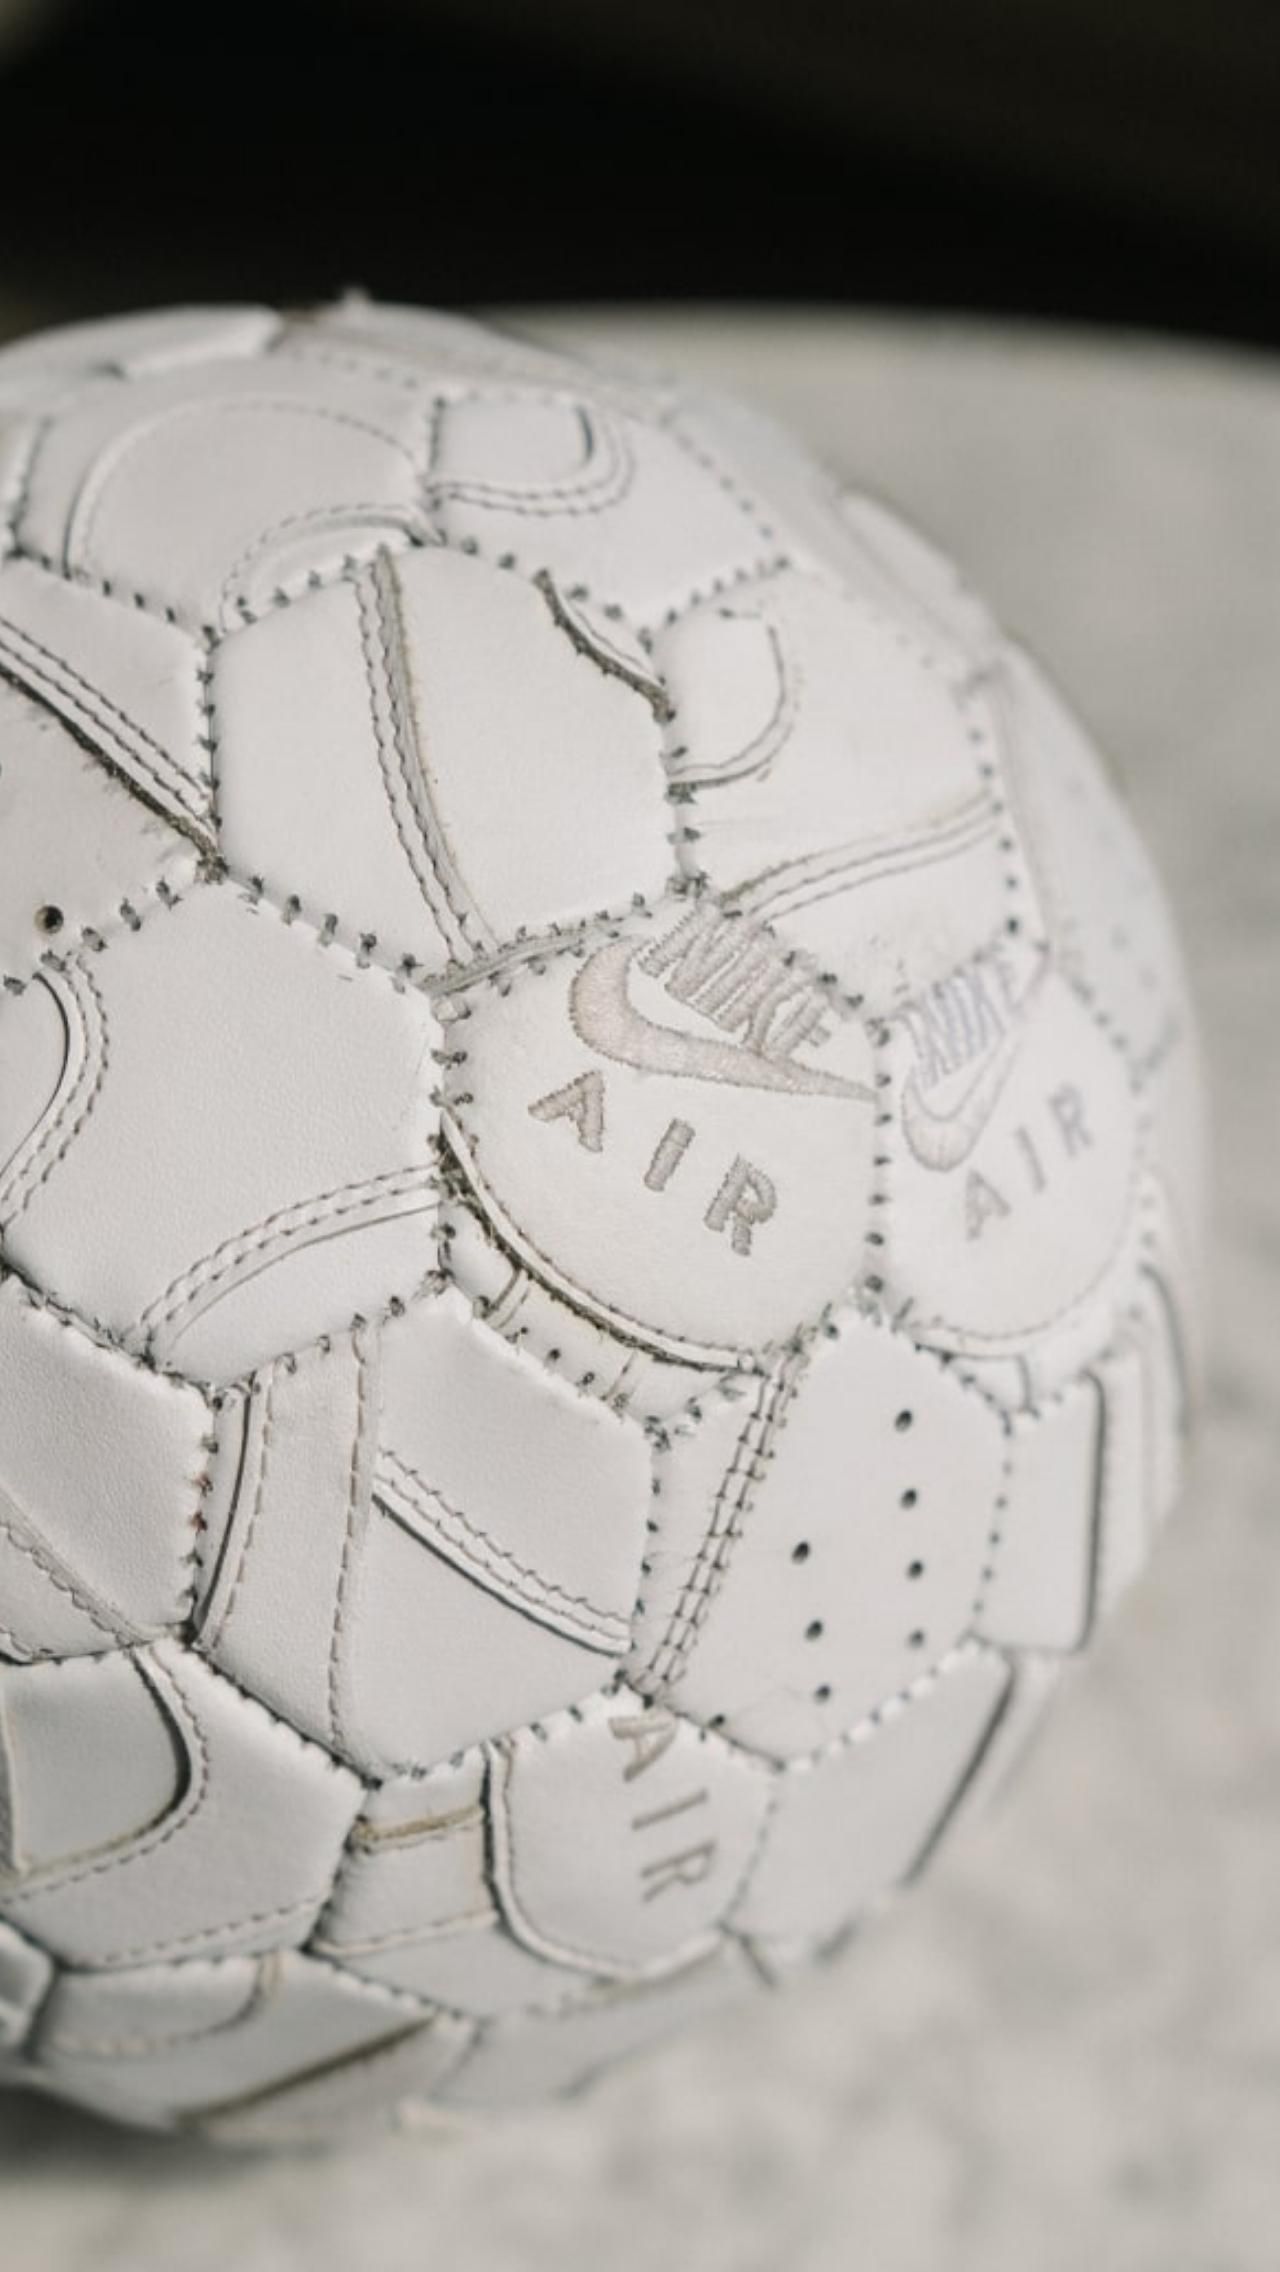 Все мячи сделаны вручную из  уникальных материалов: например, из старых бутс Стивена Джеррарда. Или, как в его последнем творении, из восьми пар обуви Nike Air Force 1.